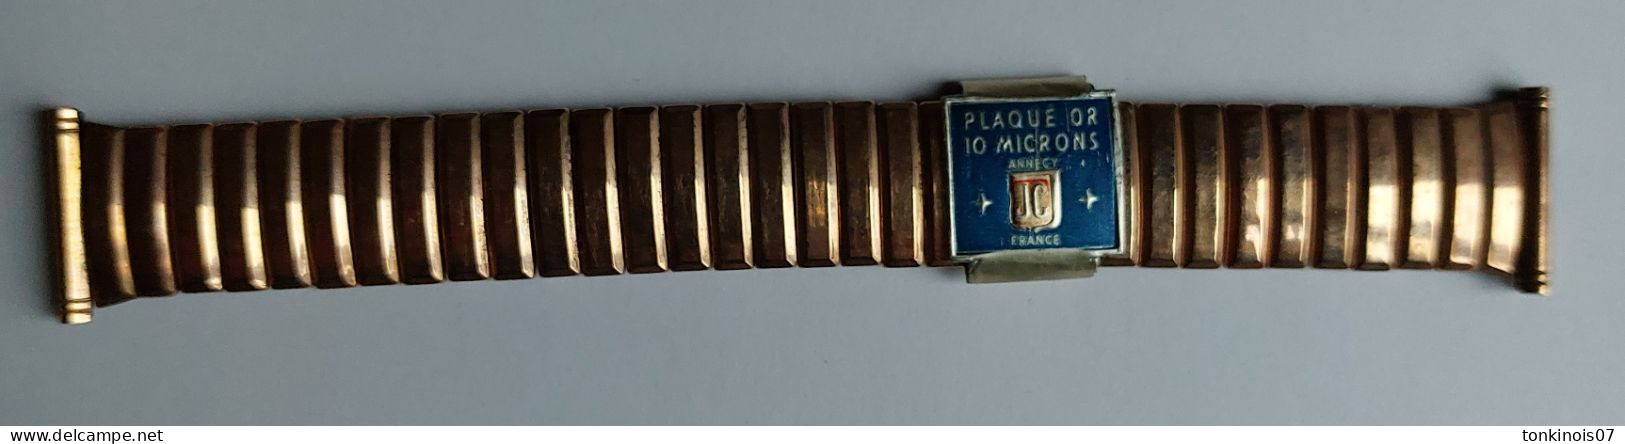 Bracelet De Montre Années 1930/1950 En Métal Plaqué Or 10 Microns Annecy JC France - Montres Anciennes